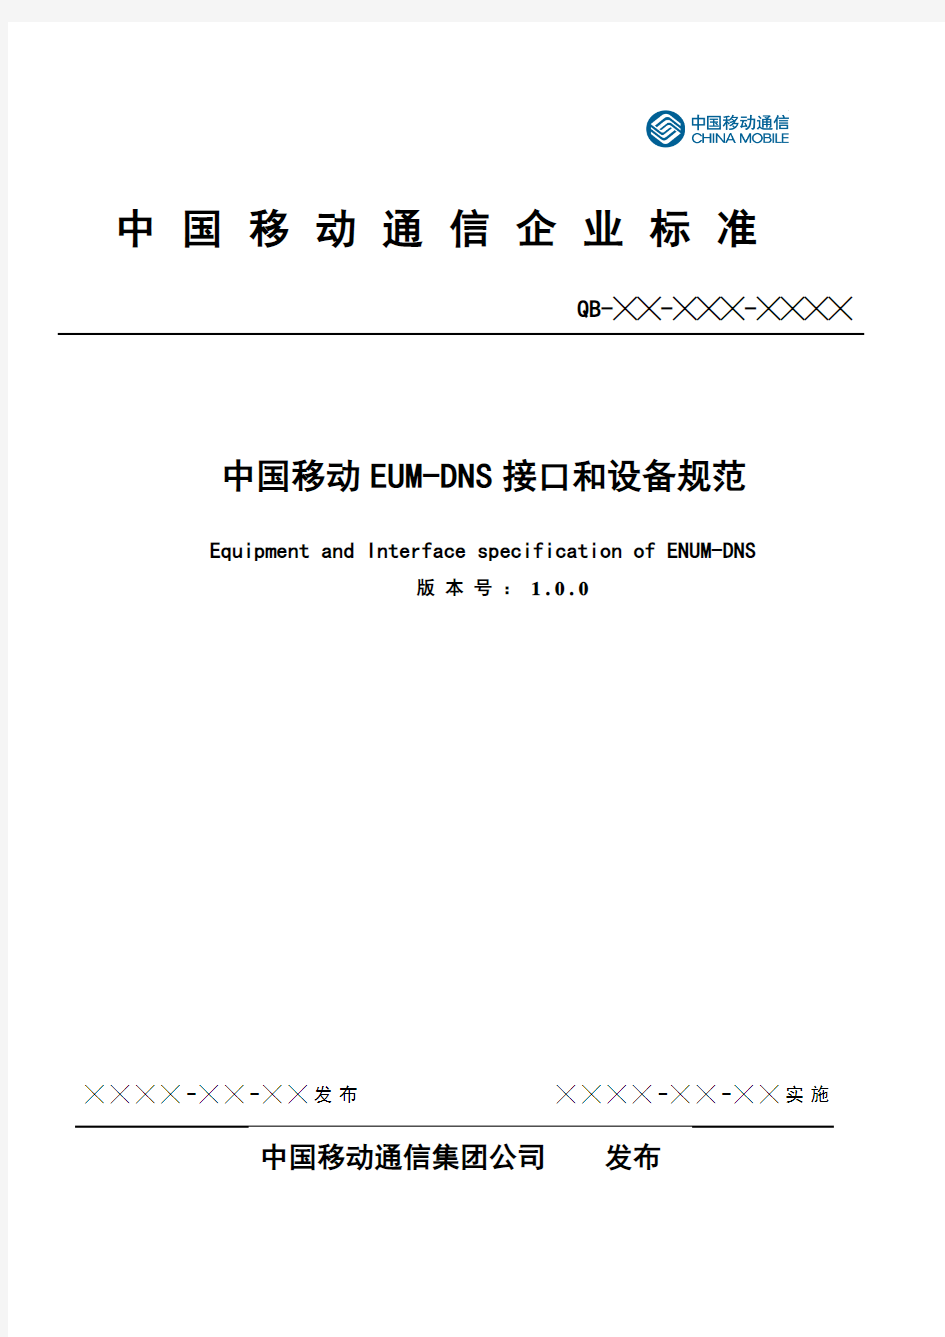 《中国移动ENUM-DNS接口和设备规范》征求意见稿V1.0.0